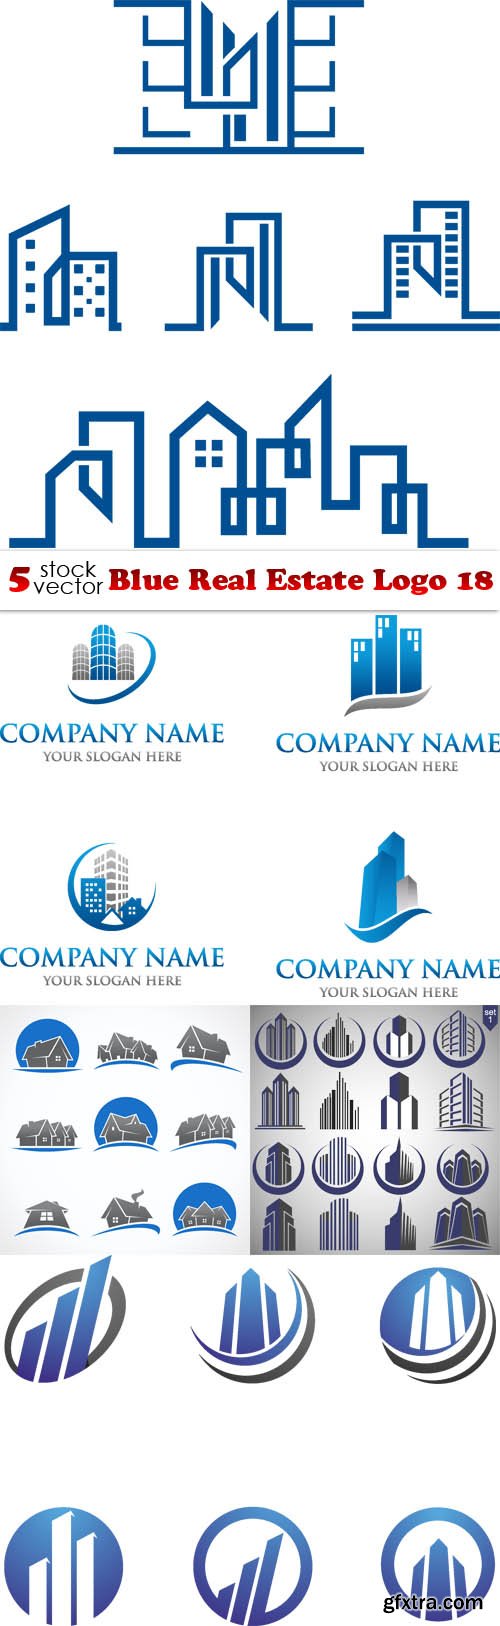 Vectors - Blue Real Estate Logo 18